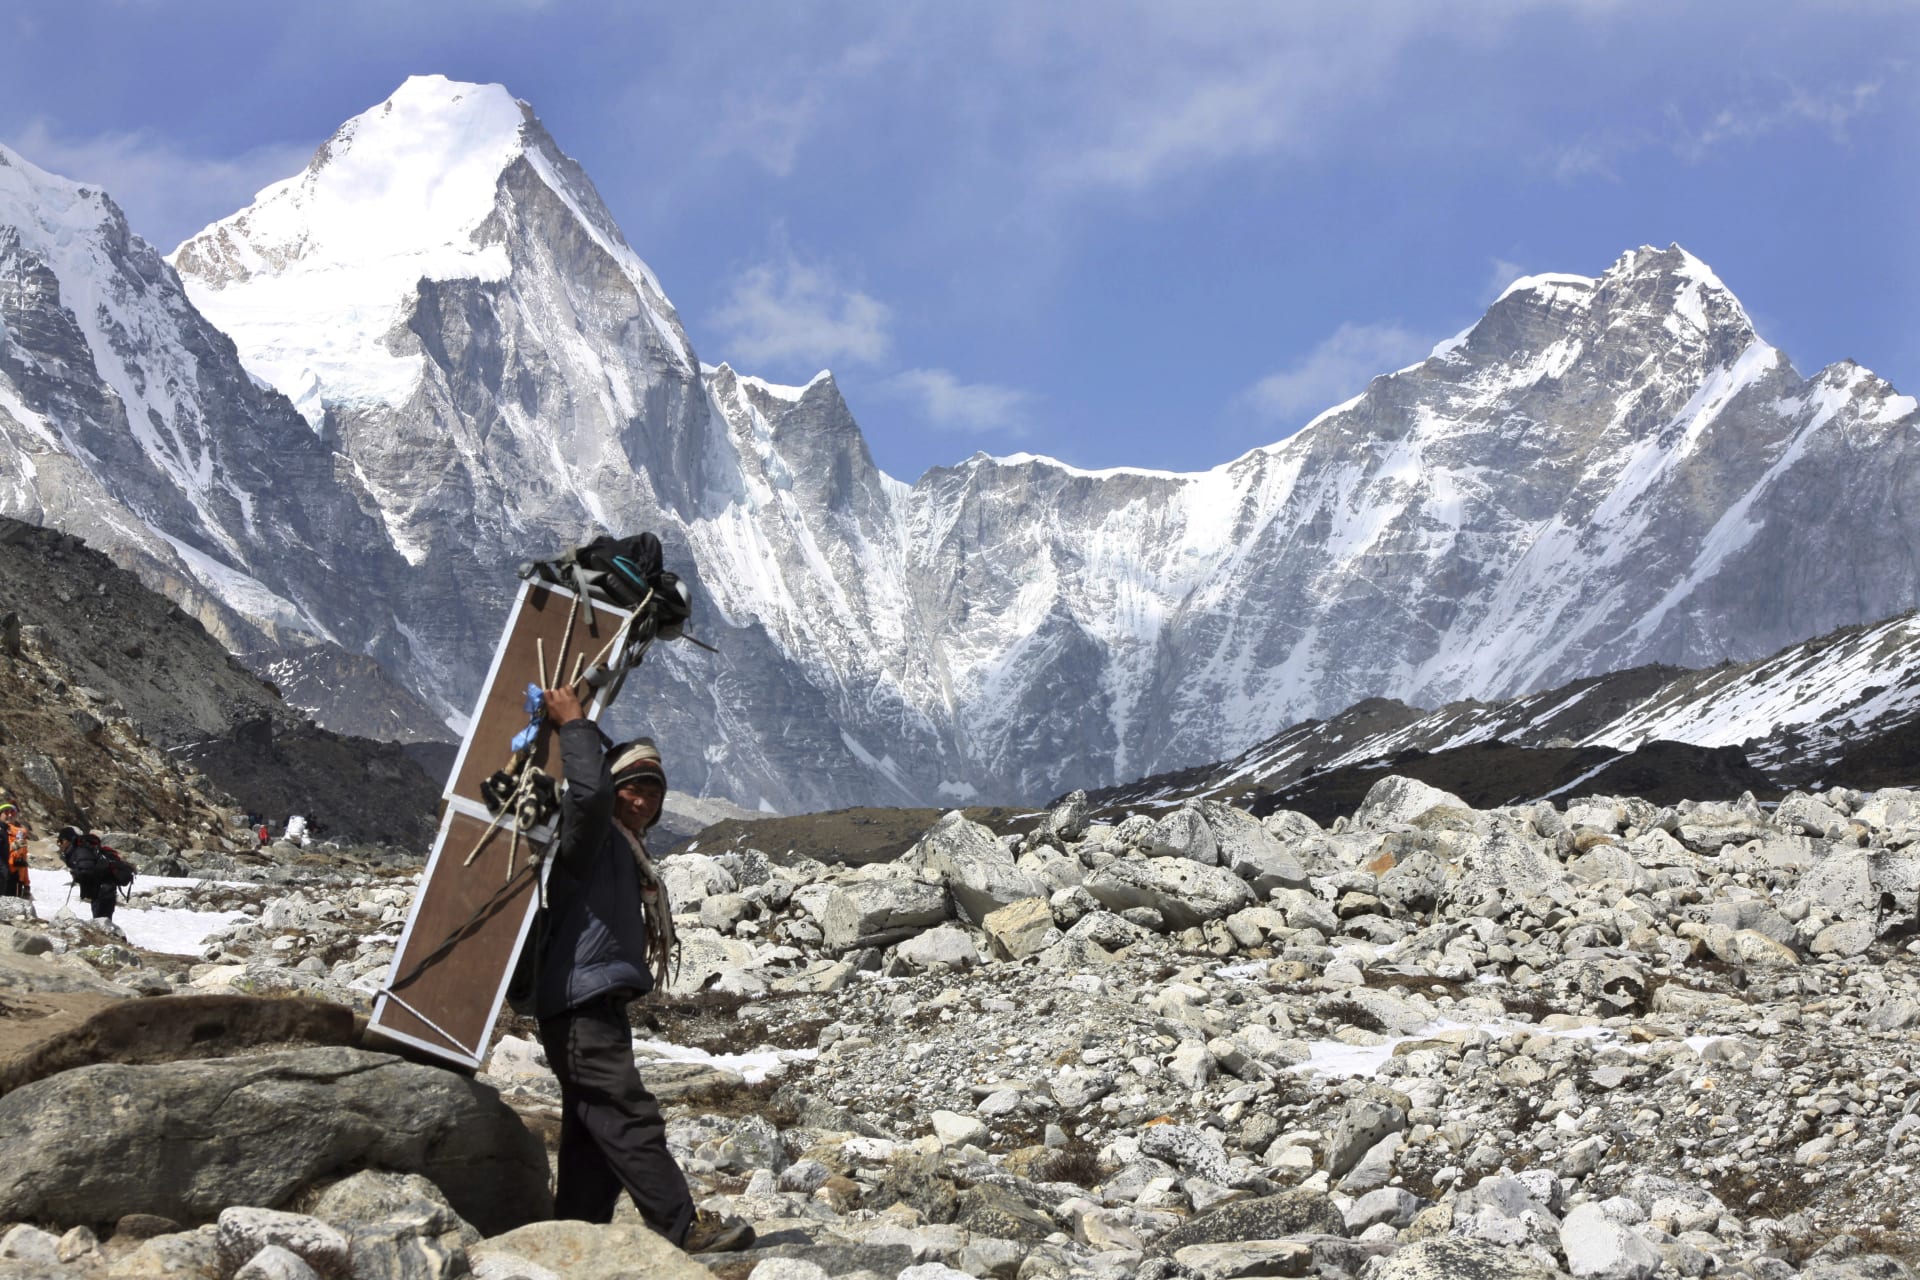 O výšce Mount Everestu se vedly debaty od roku 2015, kdy Nepál postihlo zemětřesení o síle 7,8 stupně, které připravilo o život tisíce lidí a změnilo krajinu této himálajské země. 